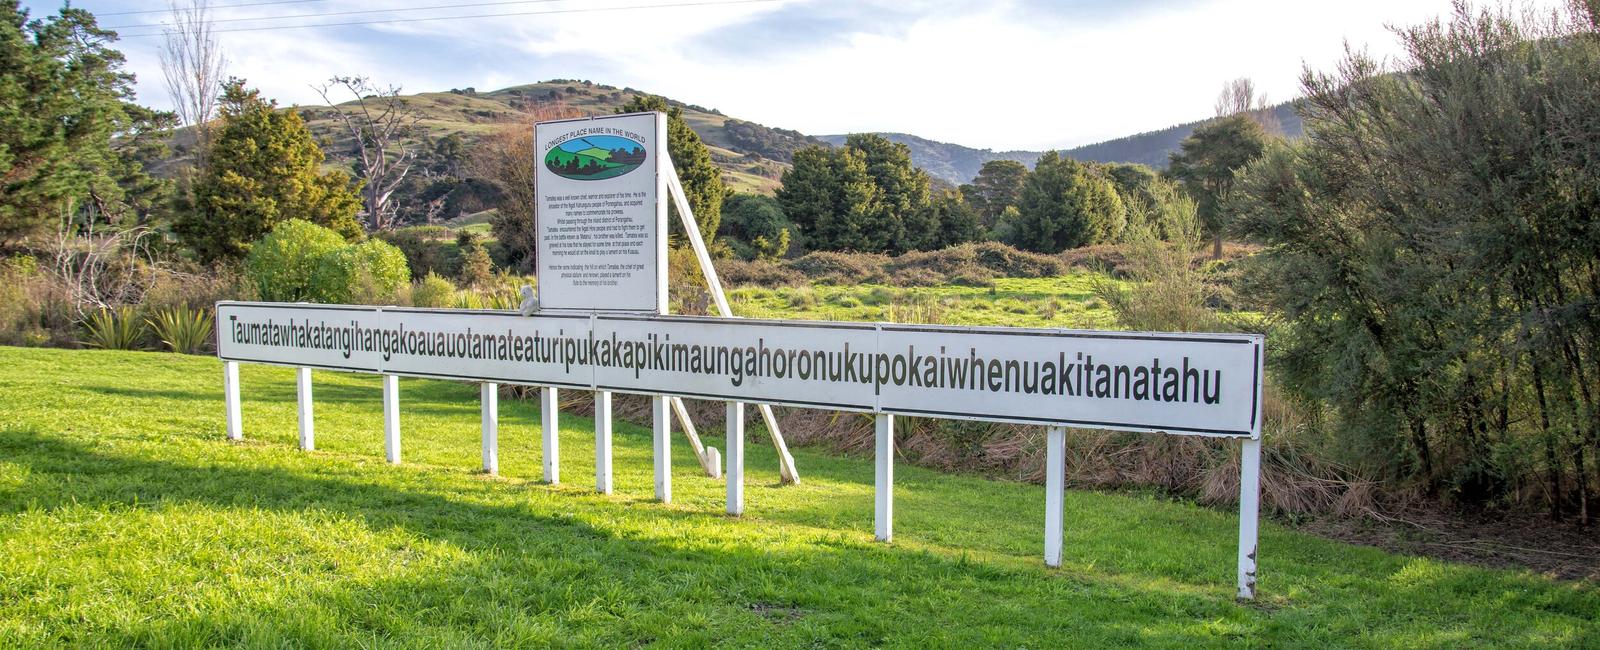 The longest place name still in use is taumata whakatangi hangakoauau o tamatea turi pukakapiki maunga horo nuku pokai whenua kitanatahu a new zealand hill